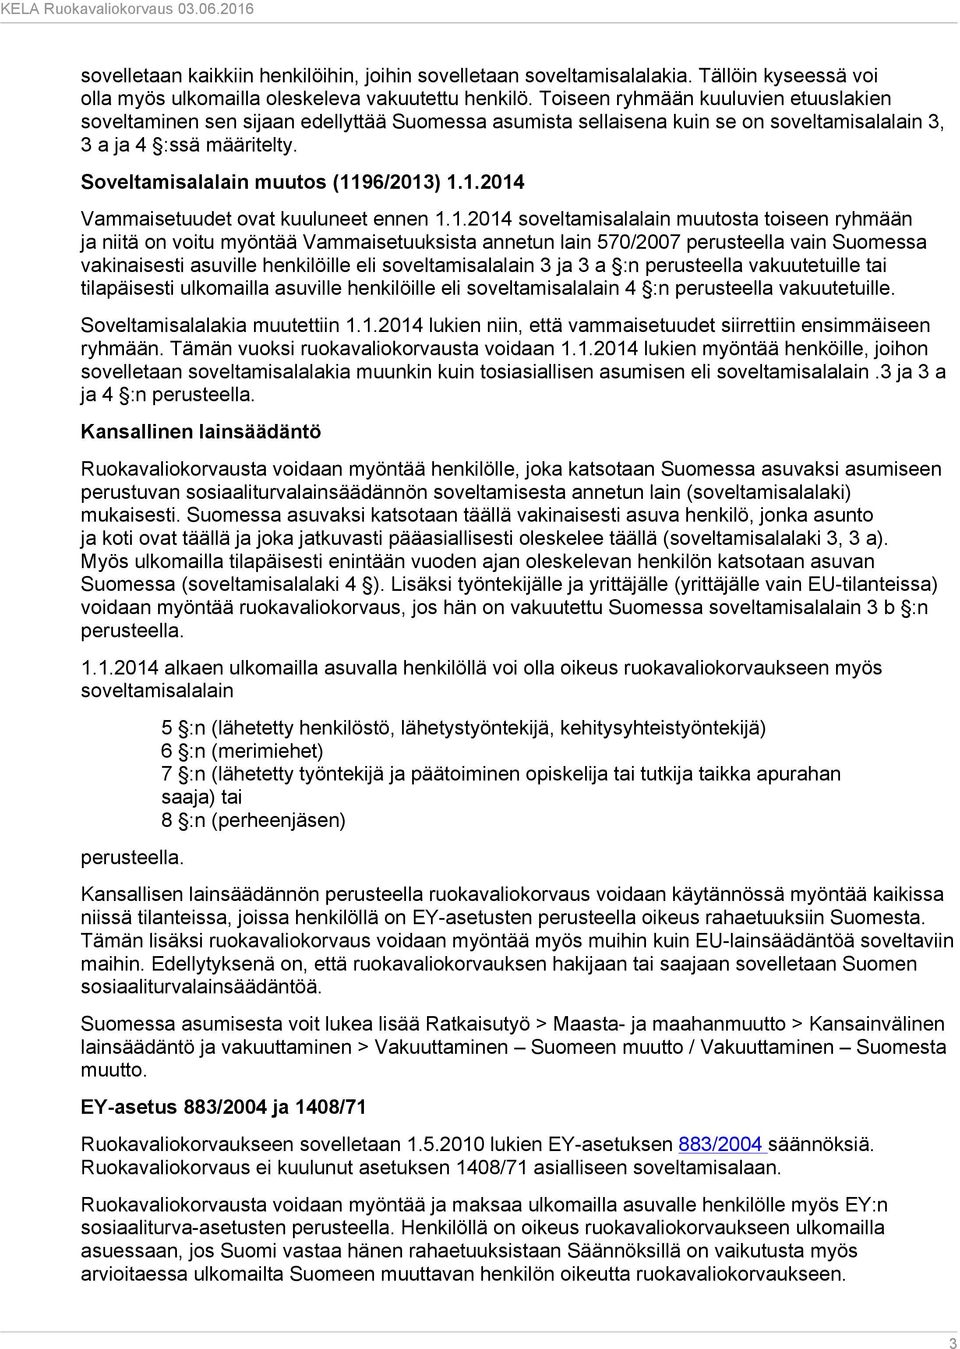 1.2014 Vammaisetuudet ovat kuuluneet ennen 1.1.2014 soveltamisalalain muutosta toiseen ryhmään ja niitä on voitu myöntää Vammaisetuuksista annetun lain 570/2007 perusteella vain Suomessa vakinaisesti